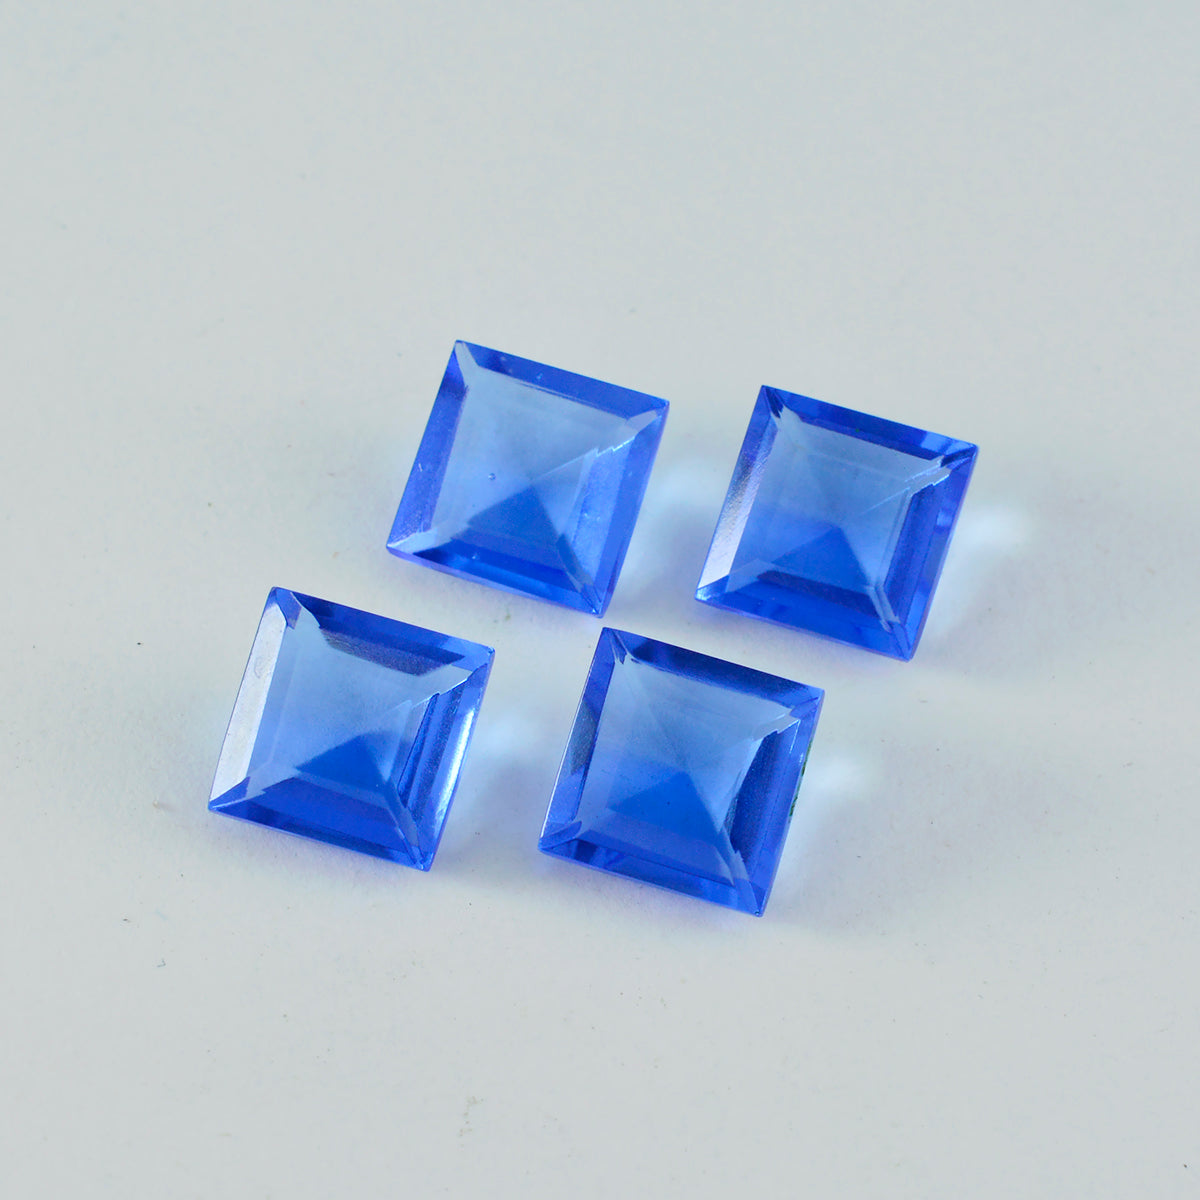 riyogems 1 шт. синий сапфир cz ограненный 11x11 мм квадратной формы красивые качественные свободные драгоценные камни